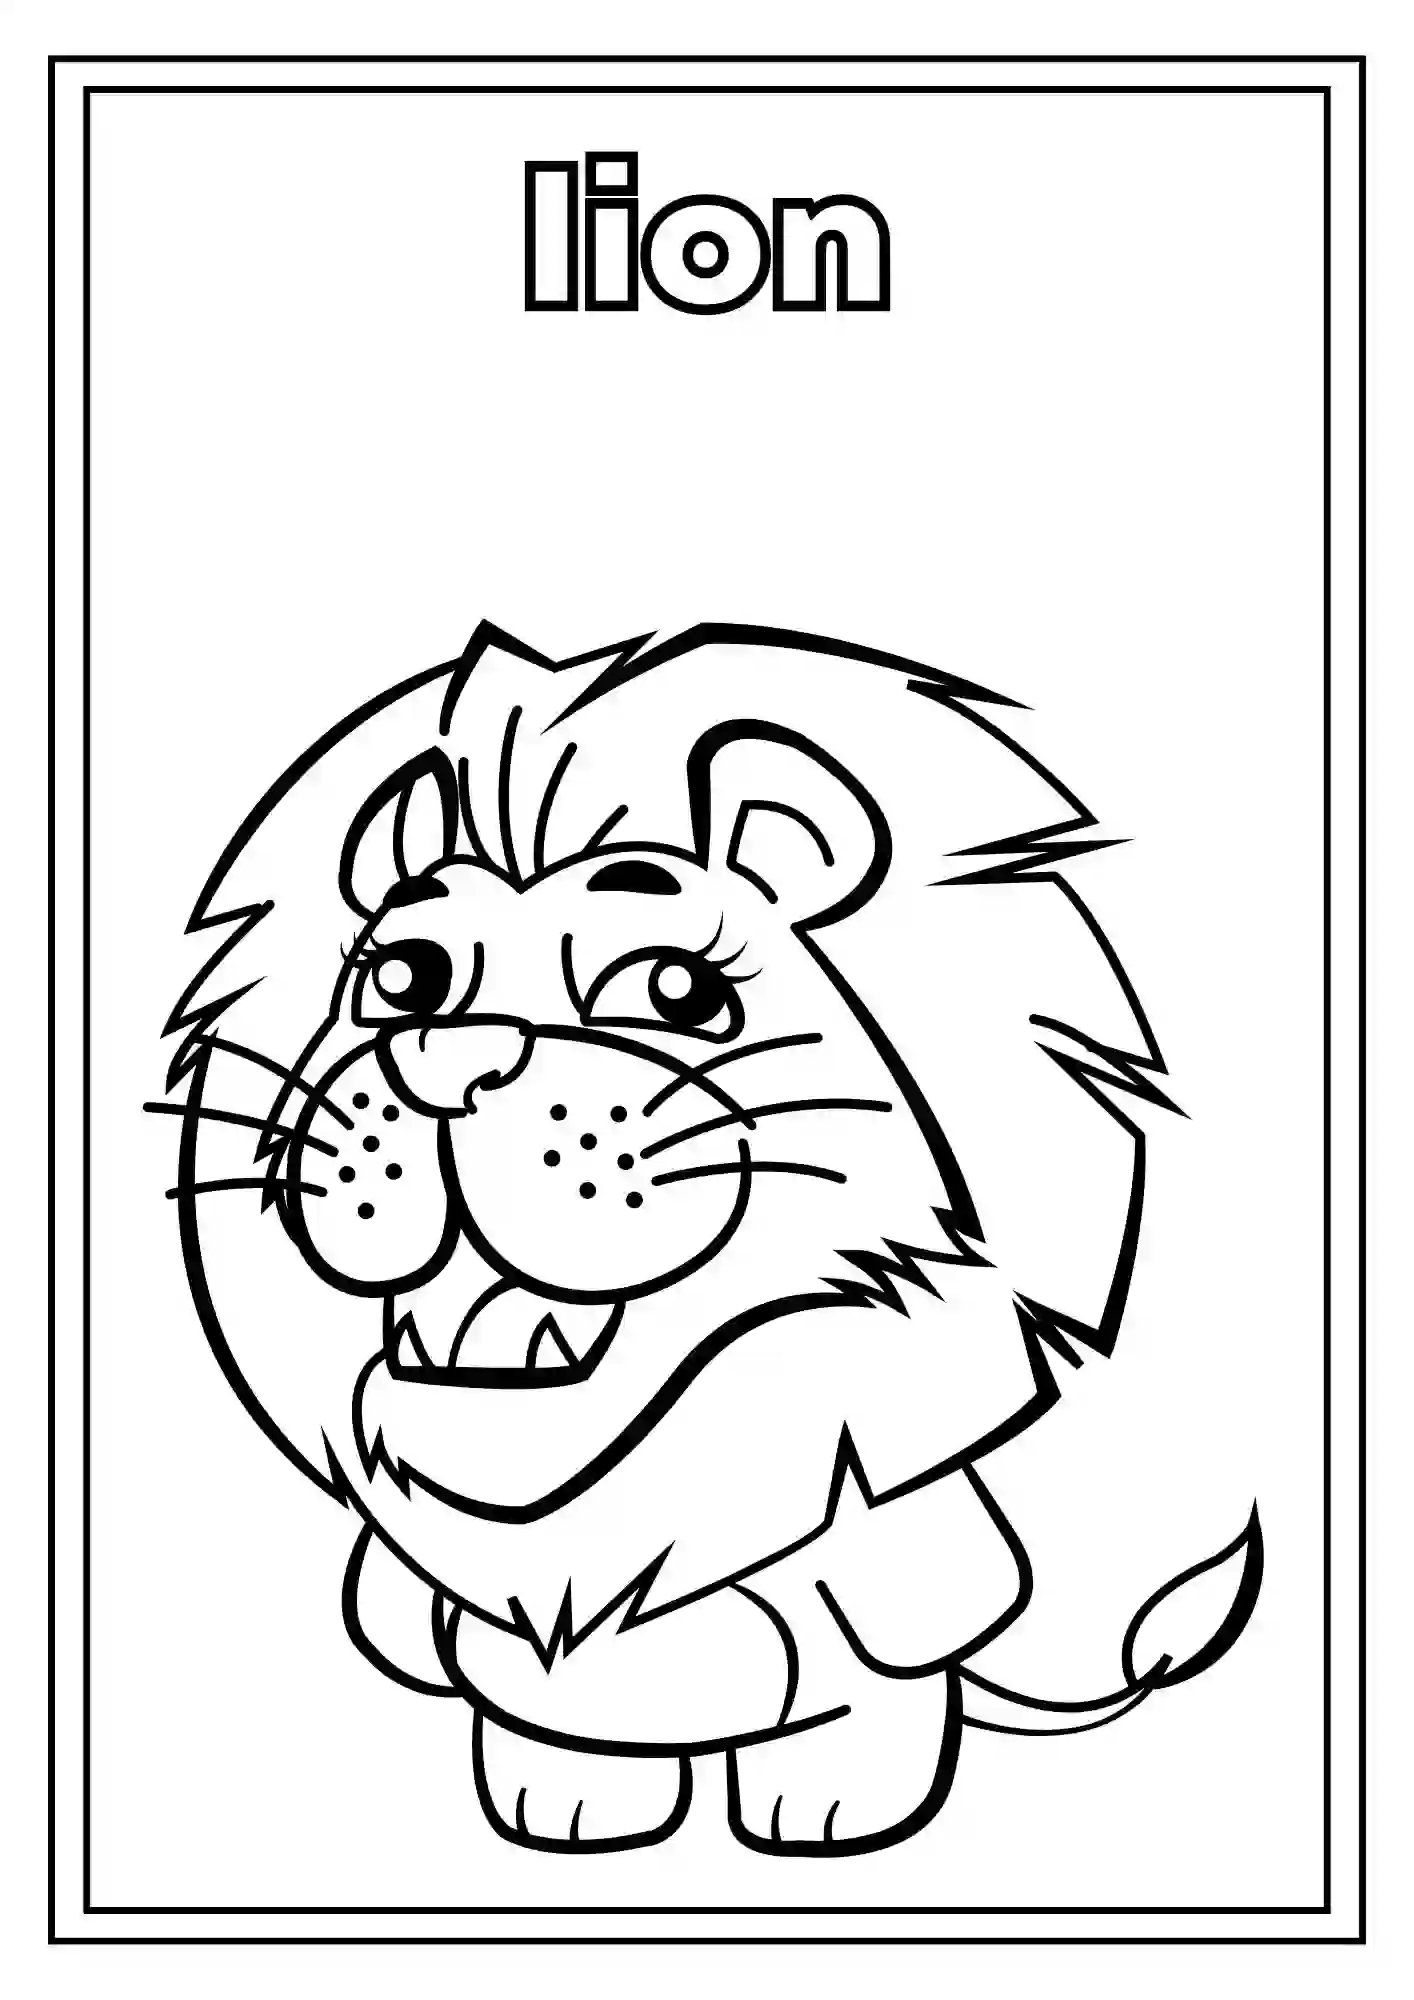 Animal Coloring Worksheets for Kindergarten Part 2 (LION)